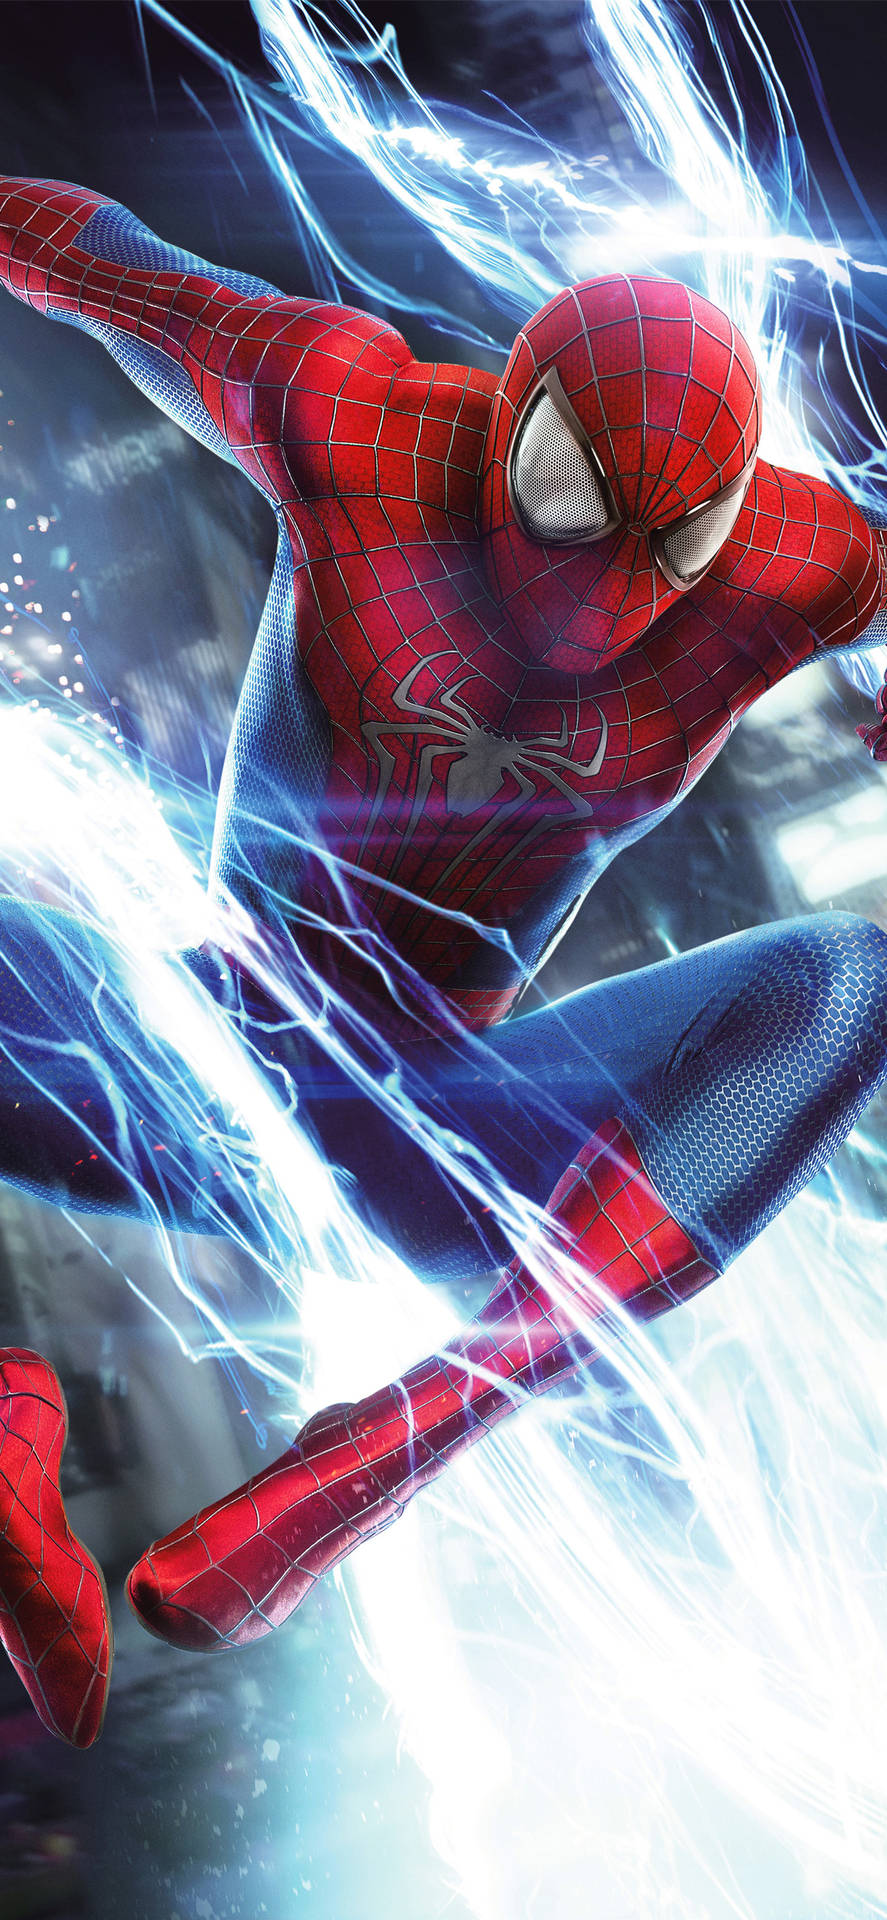 ¡esel Increíble Spider-man! Fondo de pantalla